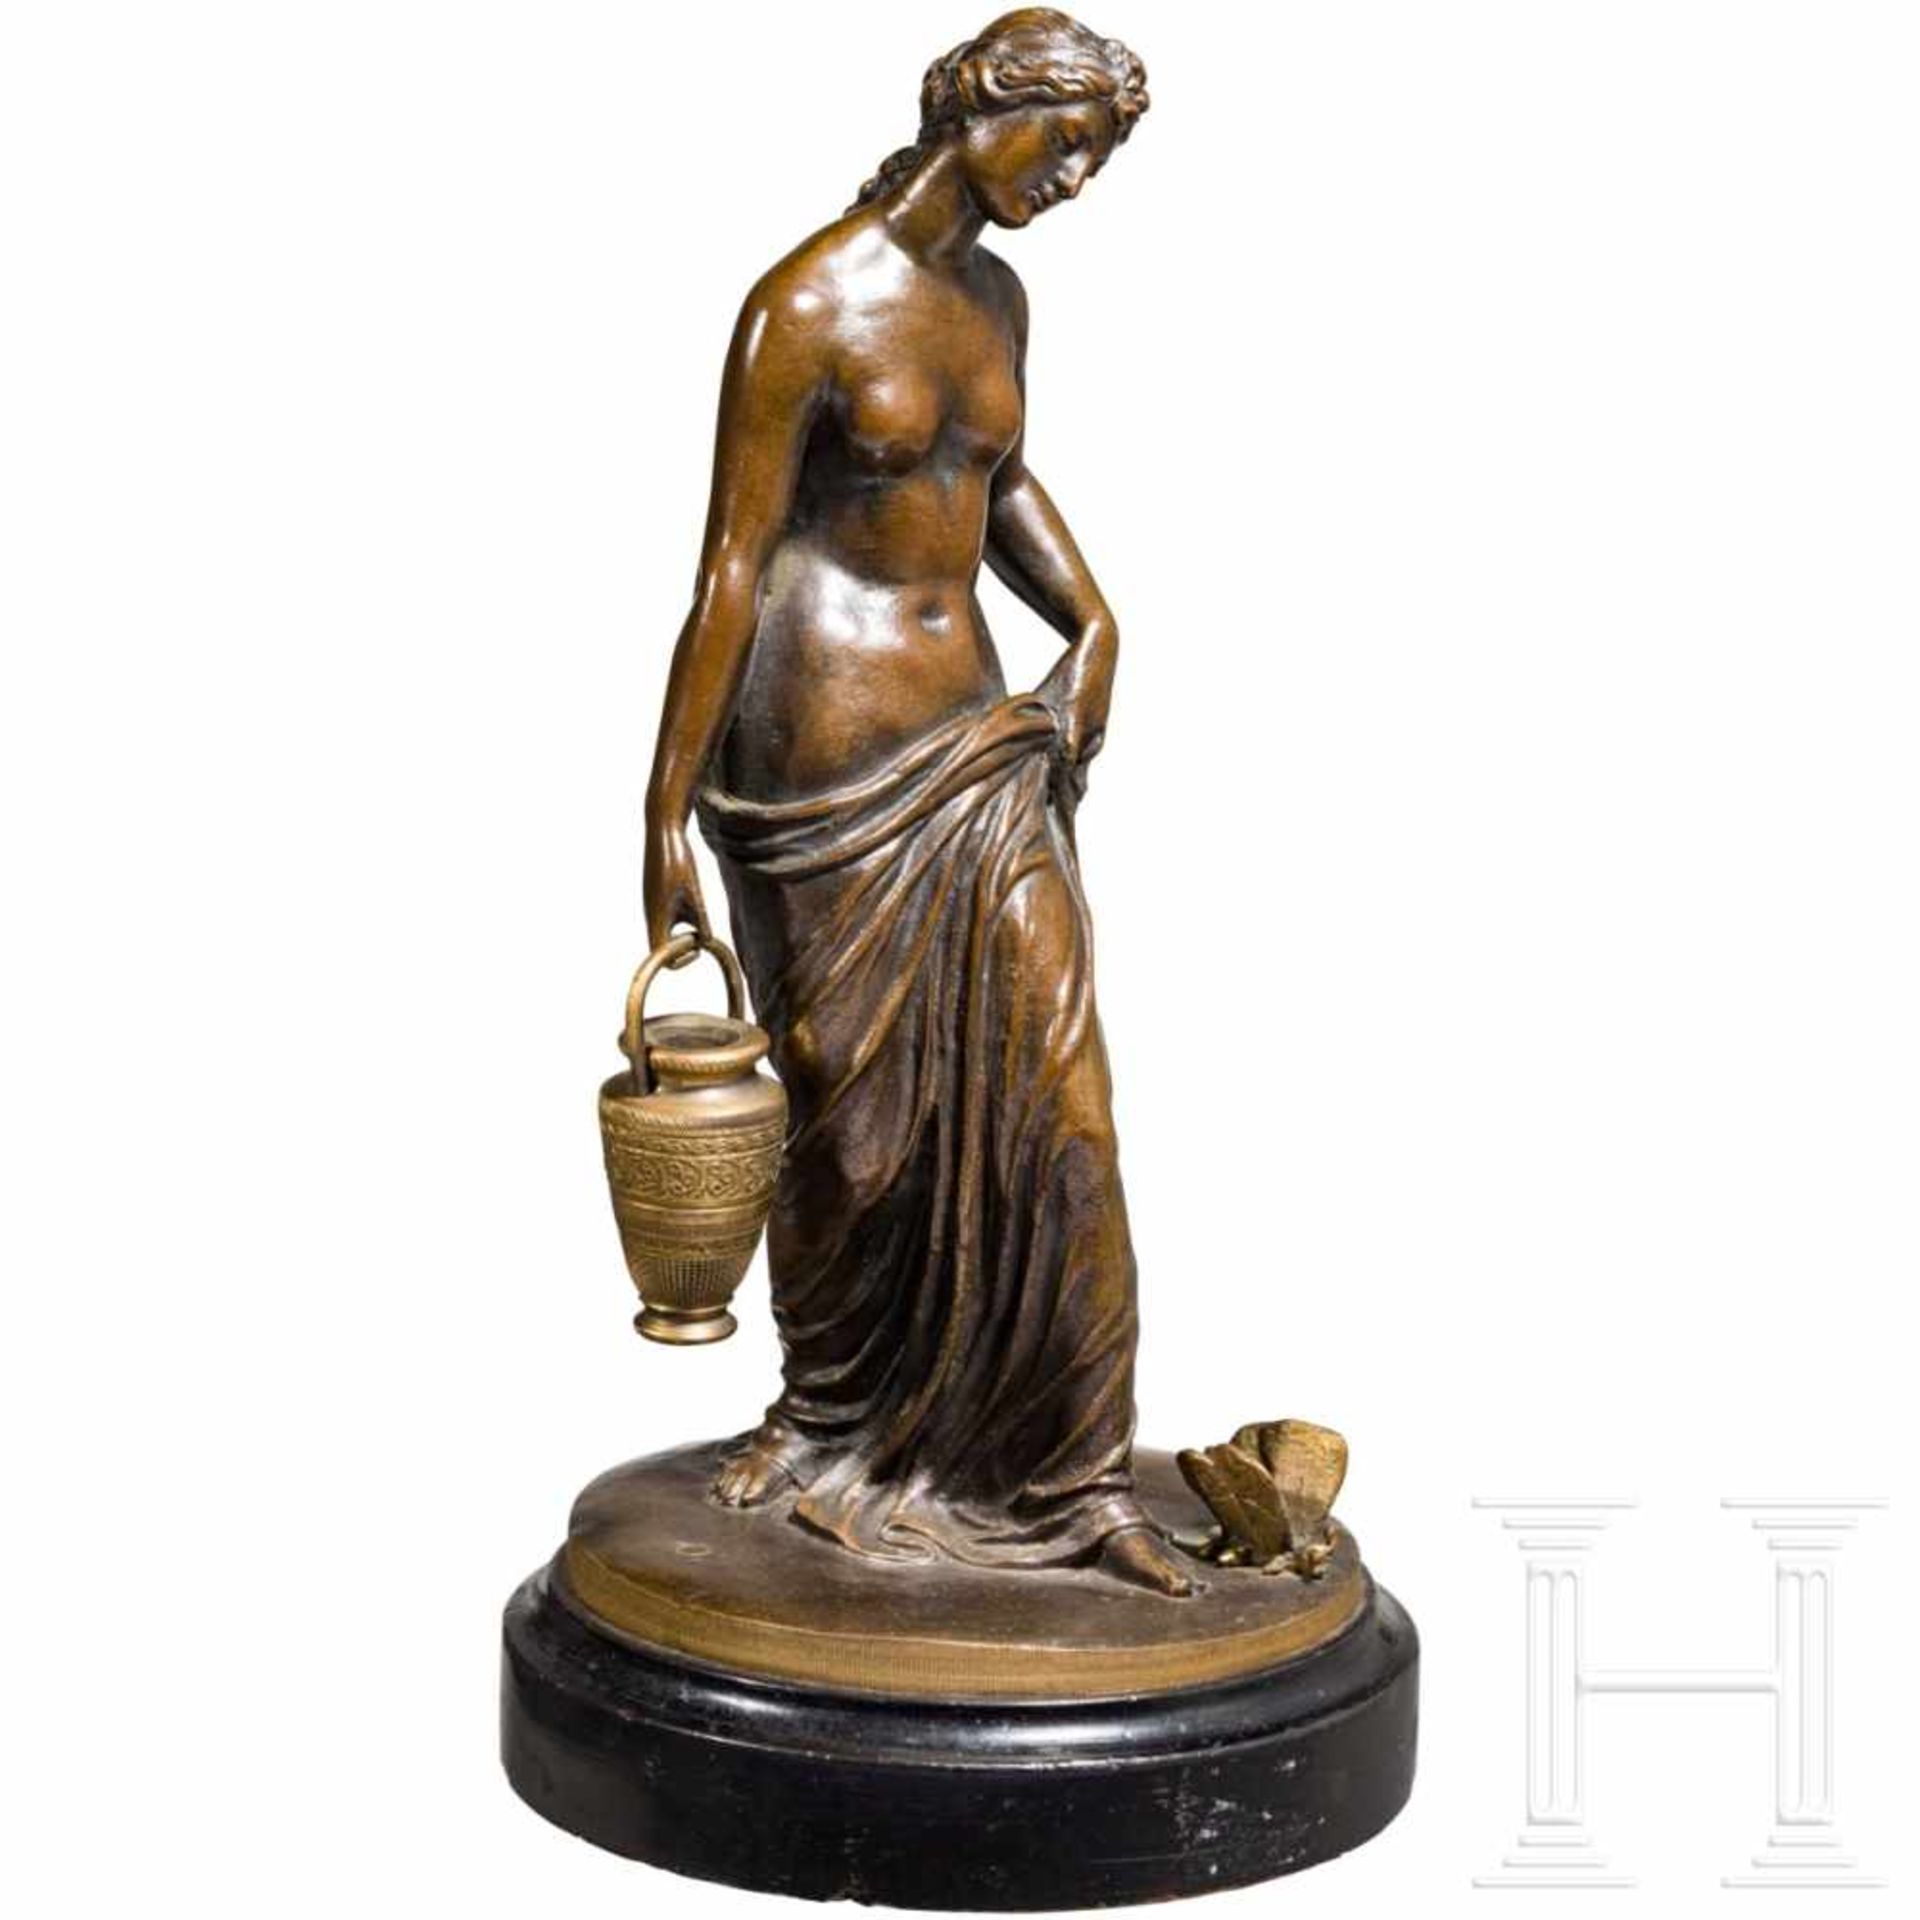 Bronzefigur einer wasserholenden Nymphe, signiert "J.G. Rau" - Bild 3 aus 5